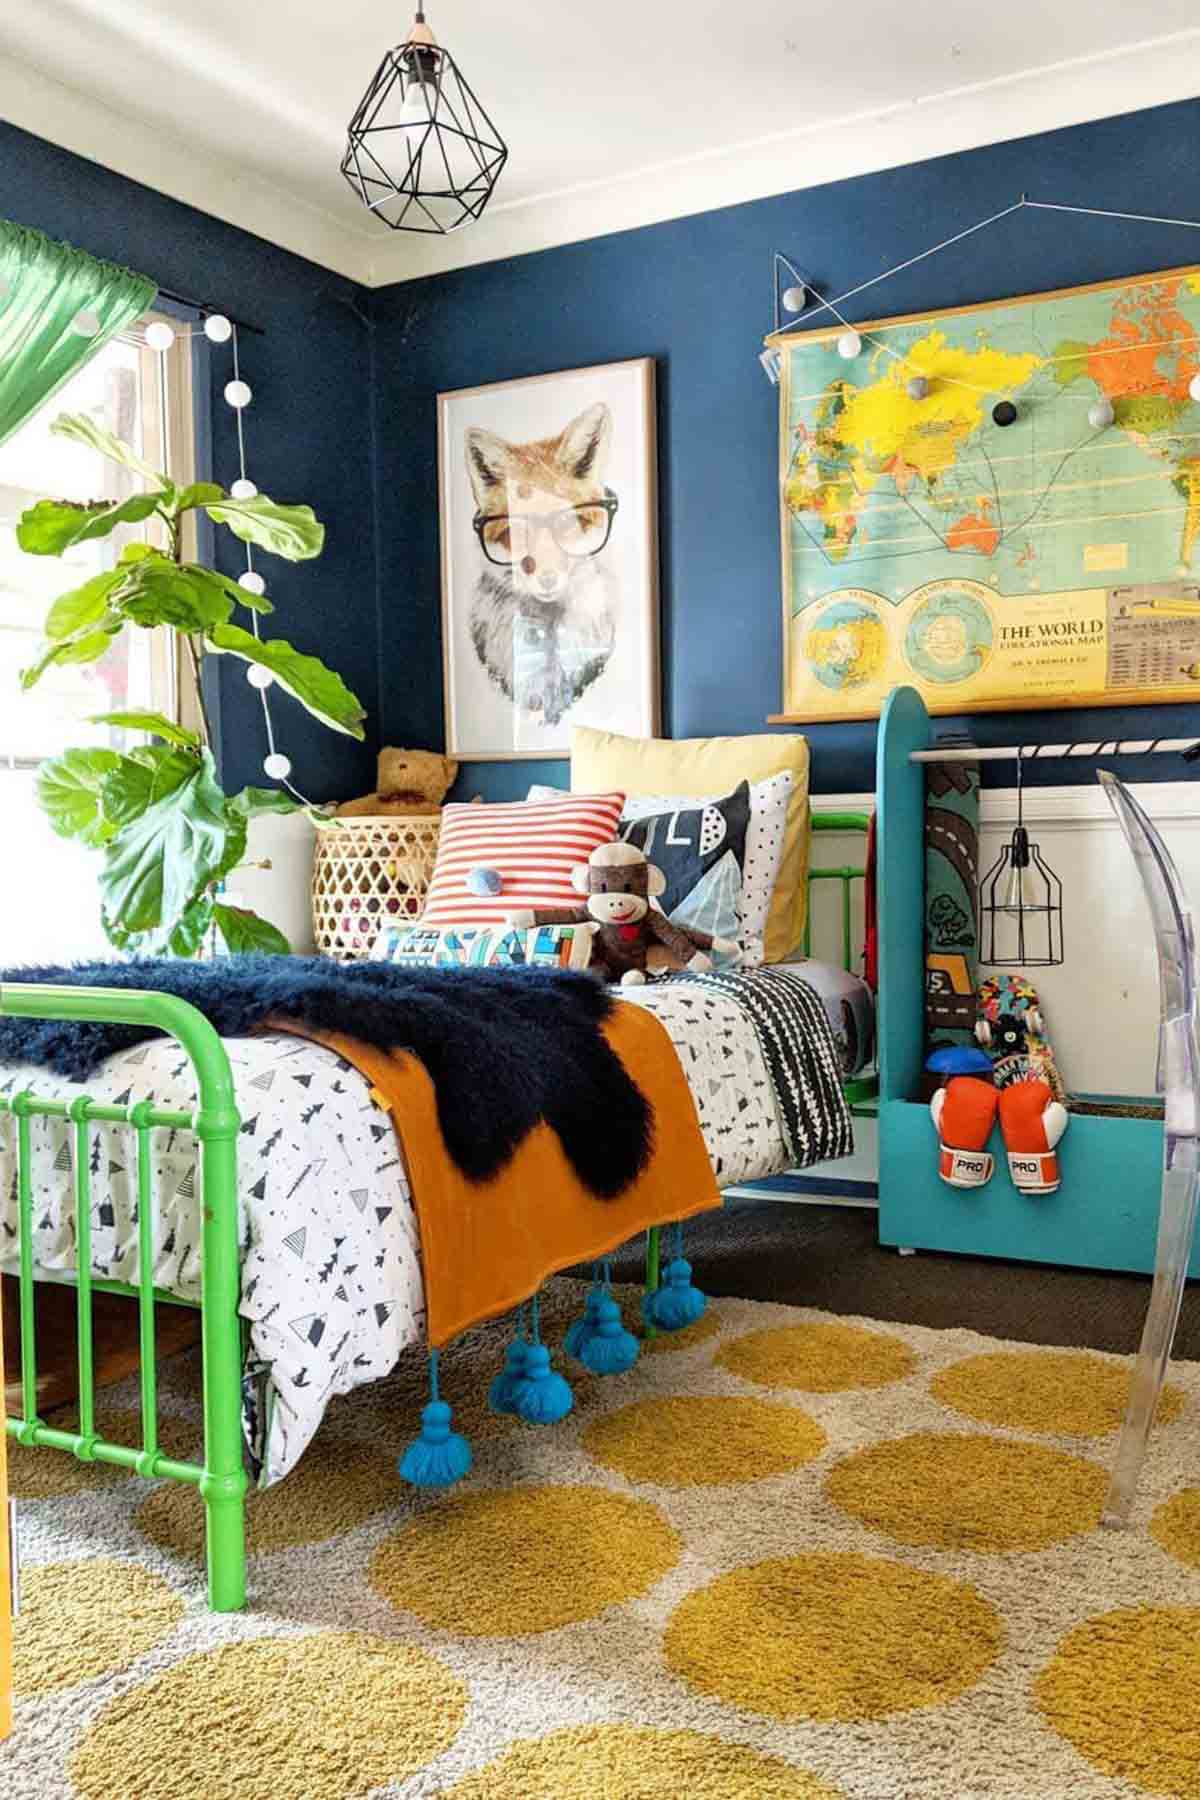 Phòng ngủ trẻ em với những gam màu cuốn hút.

Nguồn: chsblonde